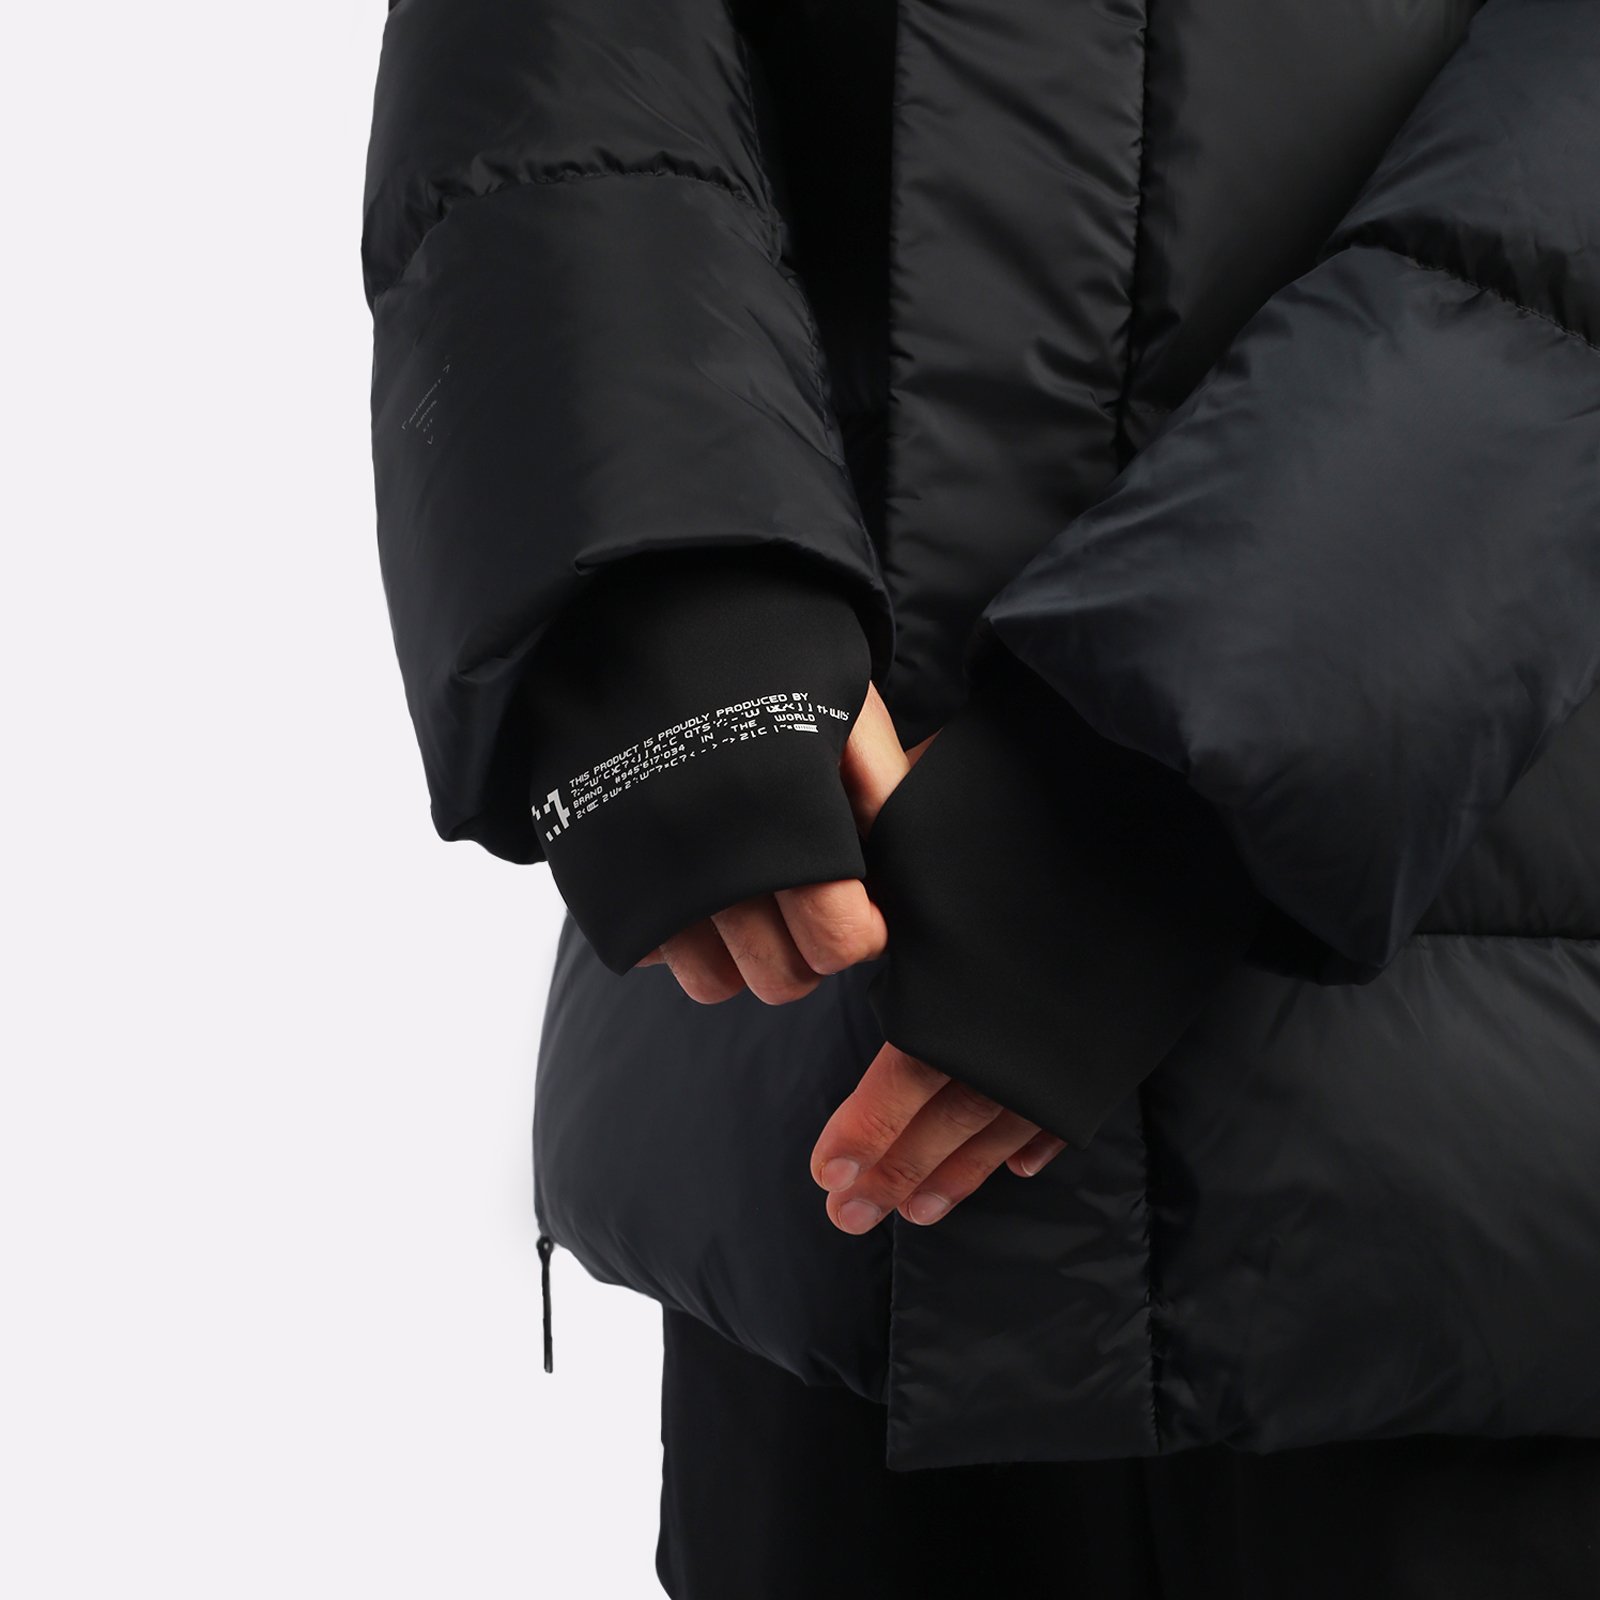 мужская черная куртка KRAKATAU Aitken Qm437-1-черный - цена, описание, фото 6